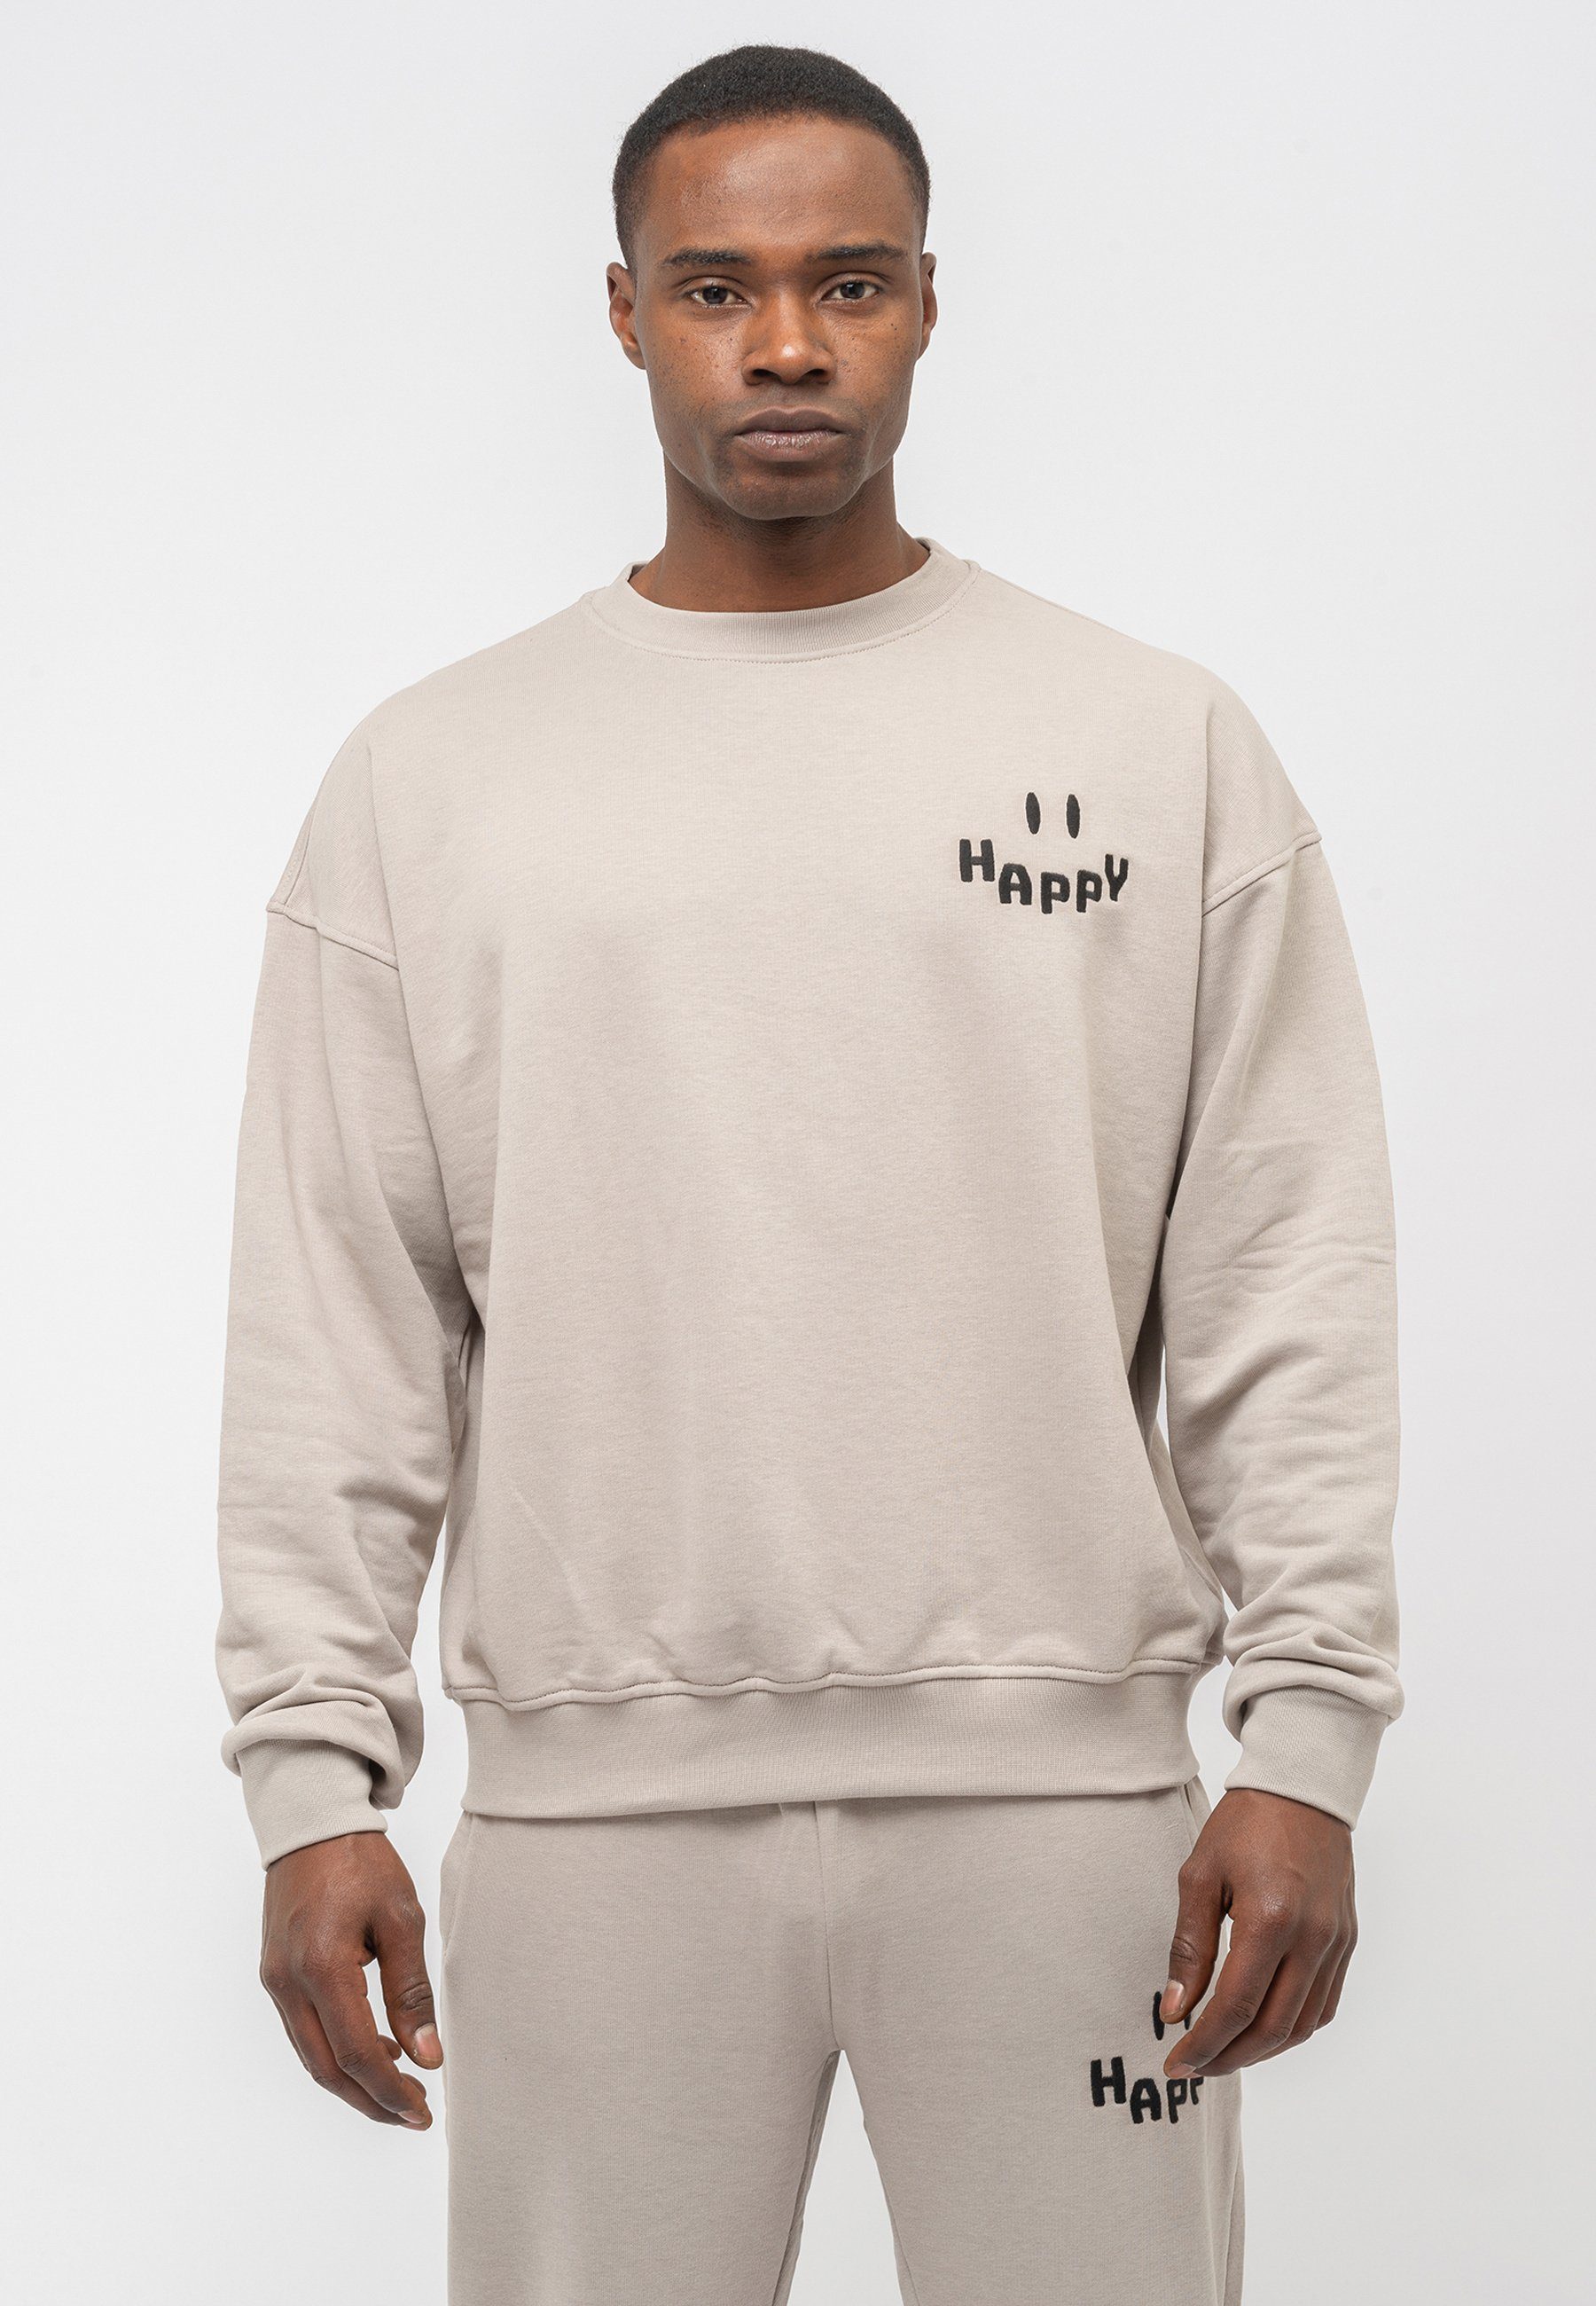 Tom Oversize mit sportivem Freizeitanzug Design Happy Sweatshirt, Print Sport Barron grau Mens